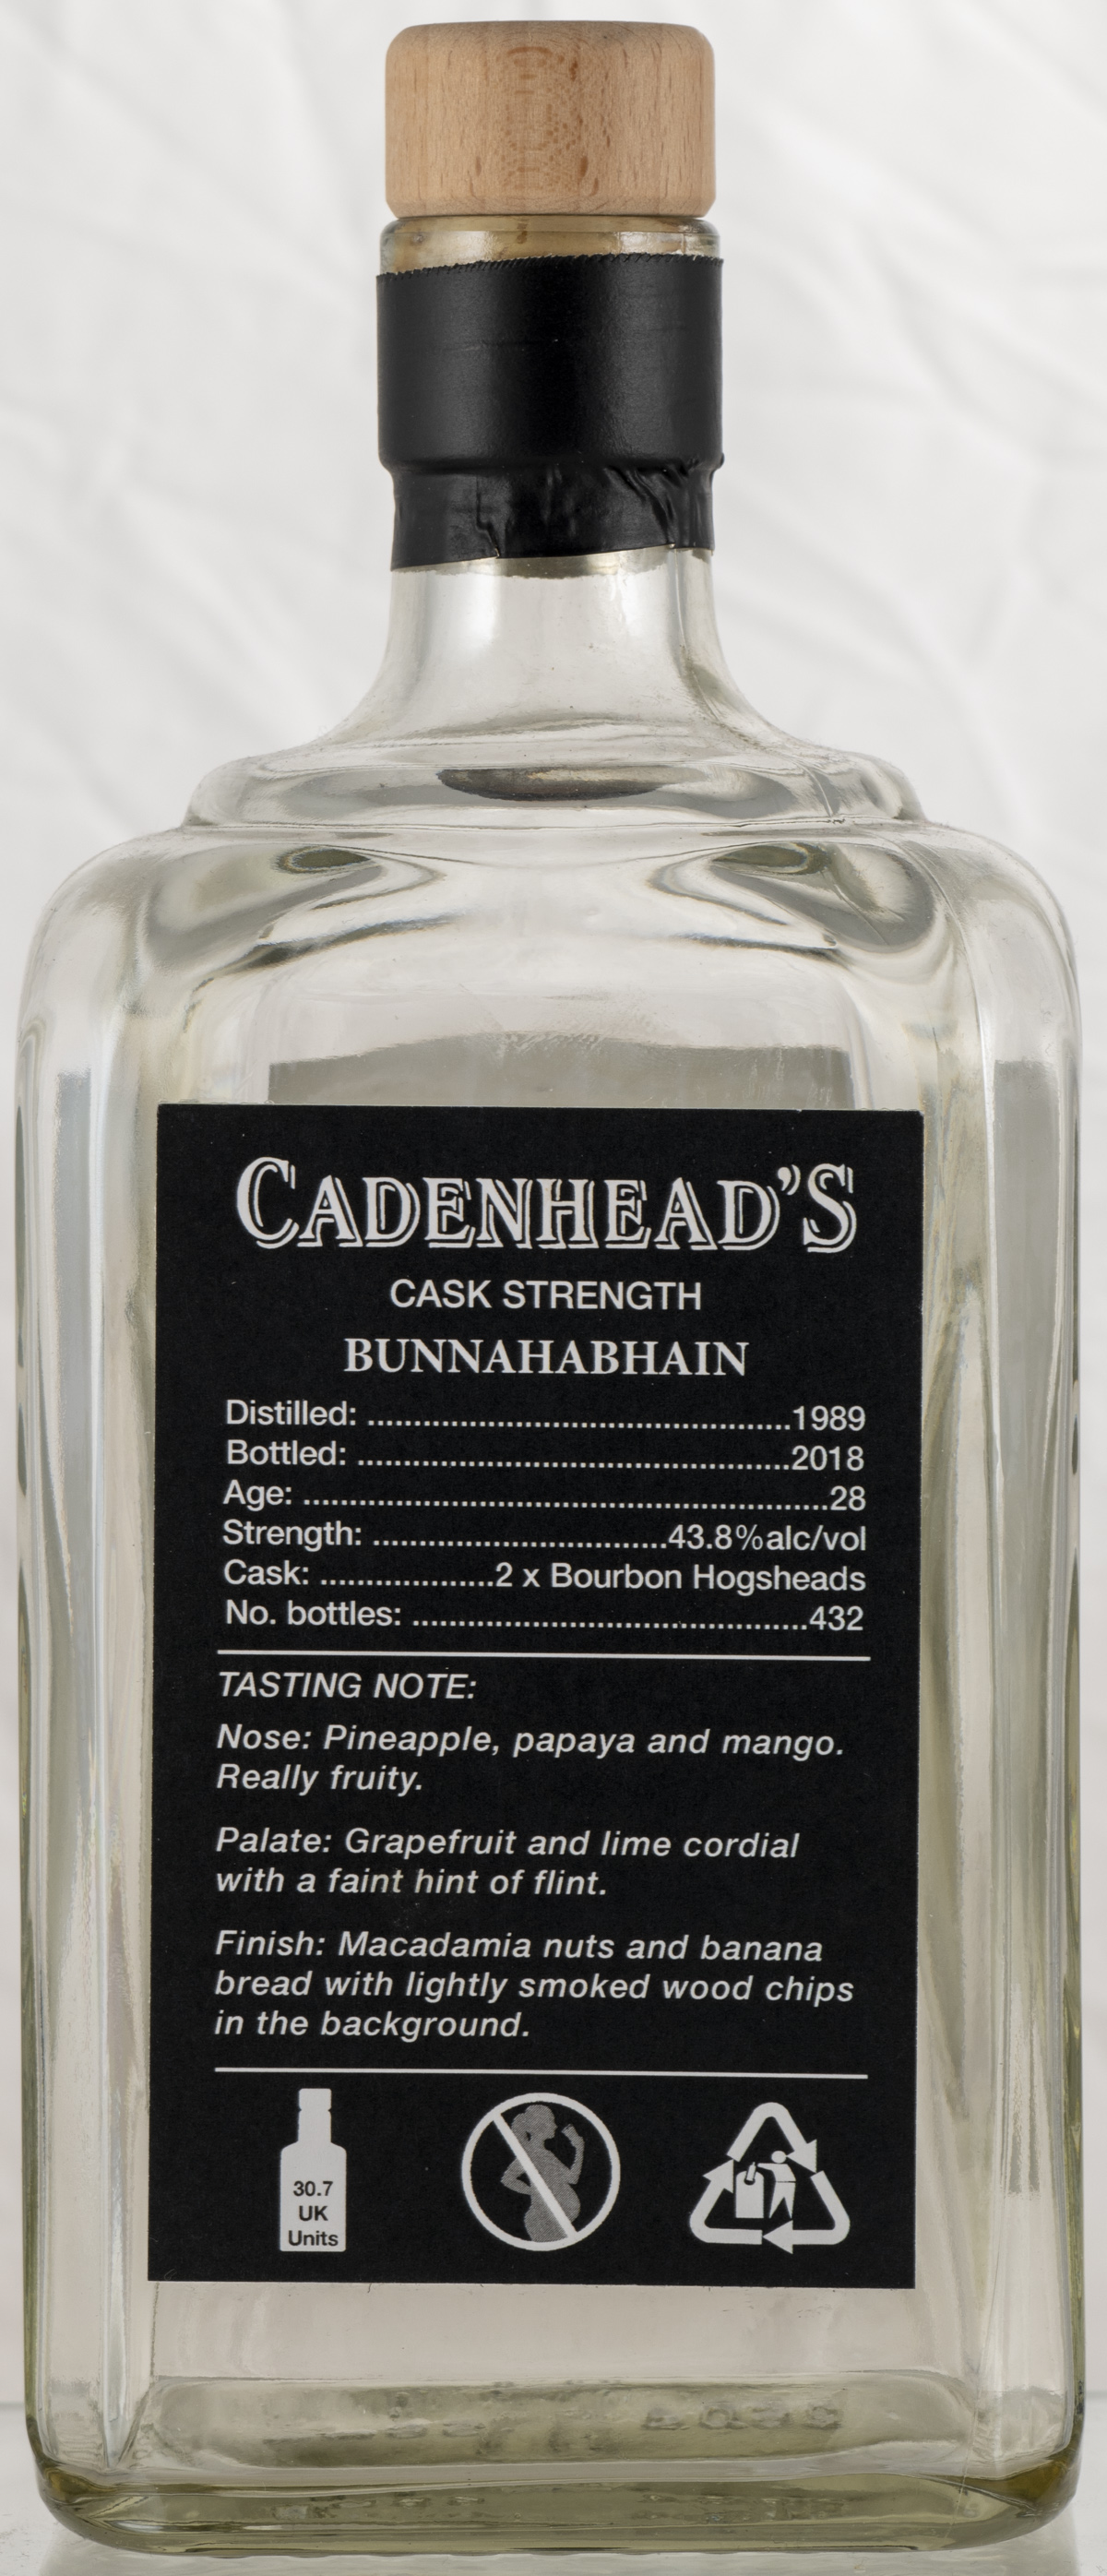 Billede: PHC_4072 - Cadenhead Bunnahabhain 28 - bottle back.jpg